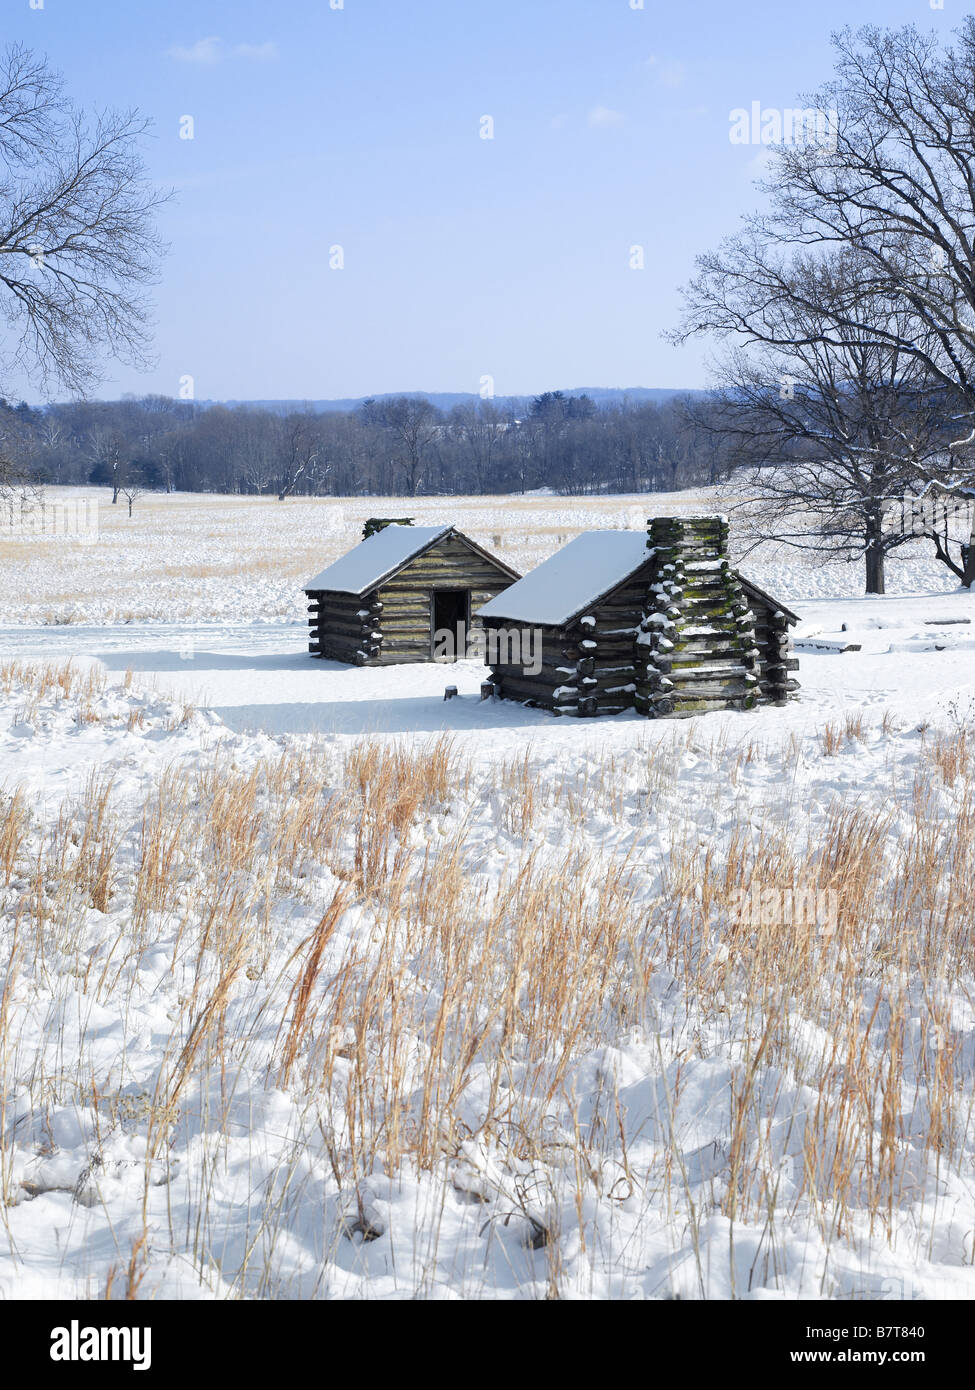 Hütten im Winter Valley Forge National Park, Nationalpark Valley Forge, Pennsylvania USA Stockfoto